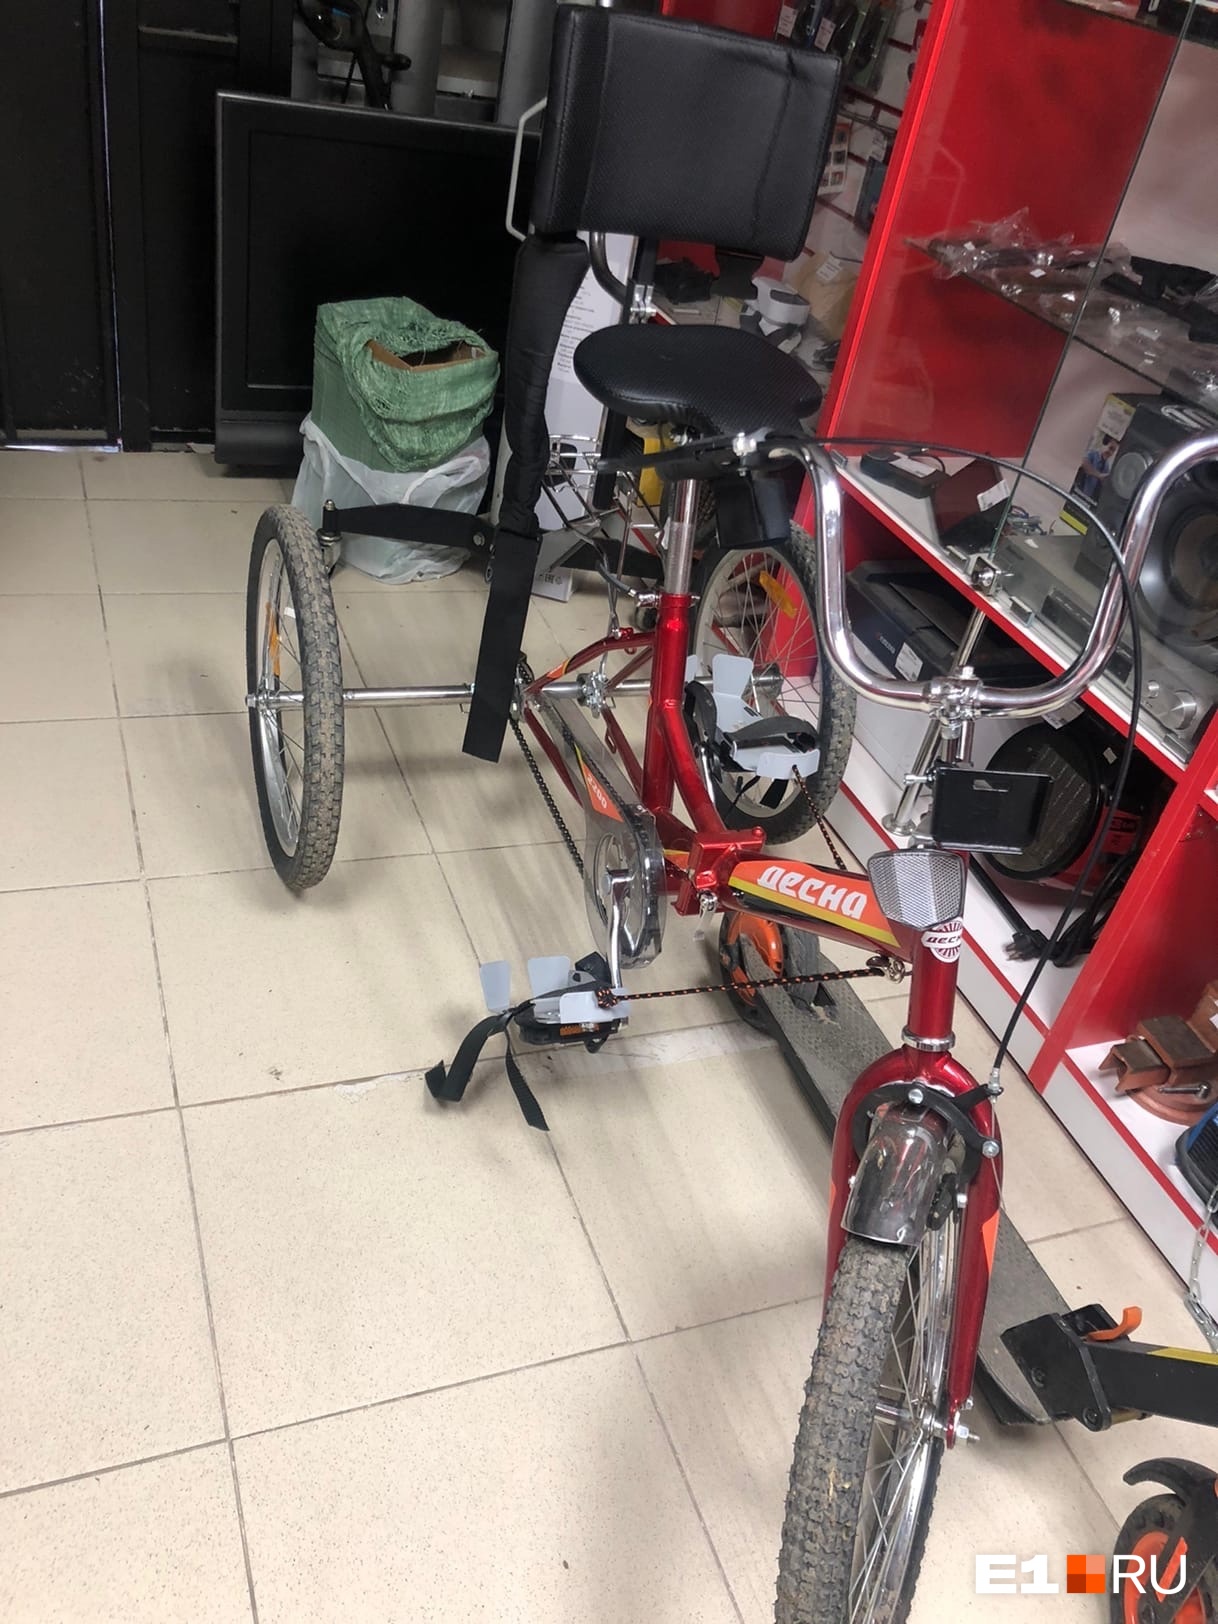 Продавец сразу понял, что велосипед украден